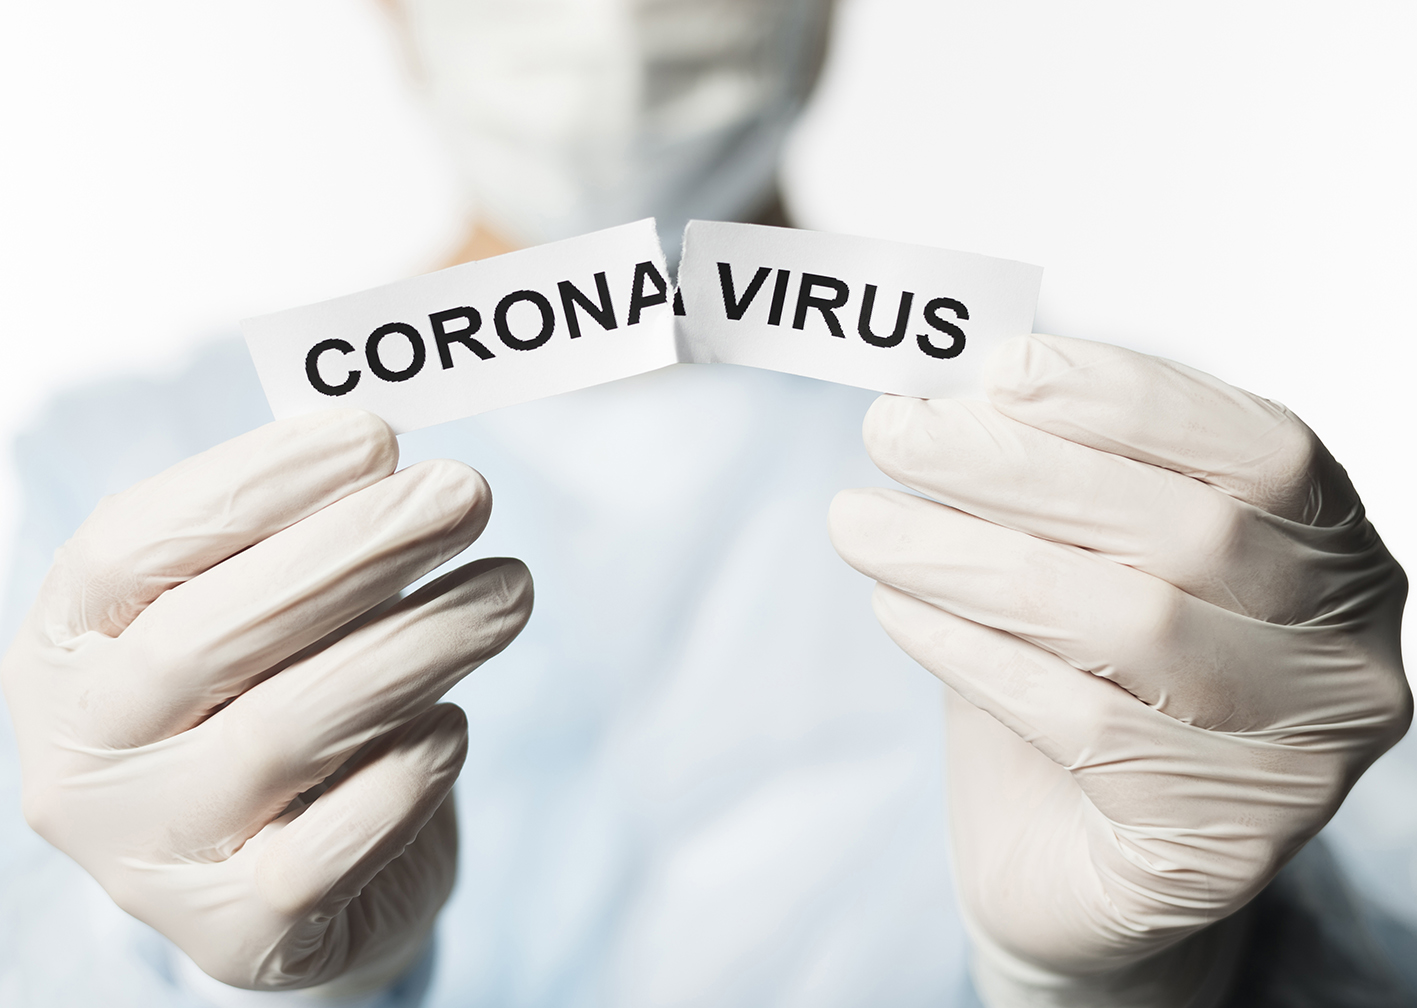 Corona Virus writen on a paper